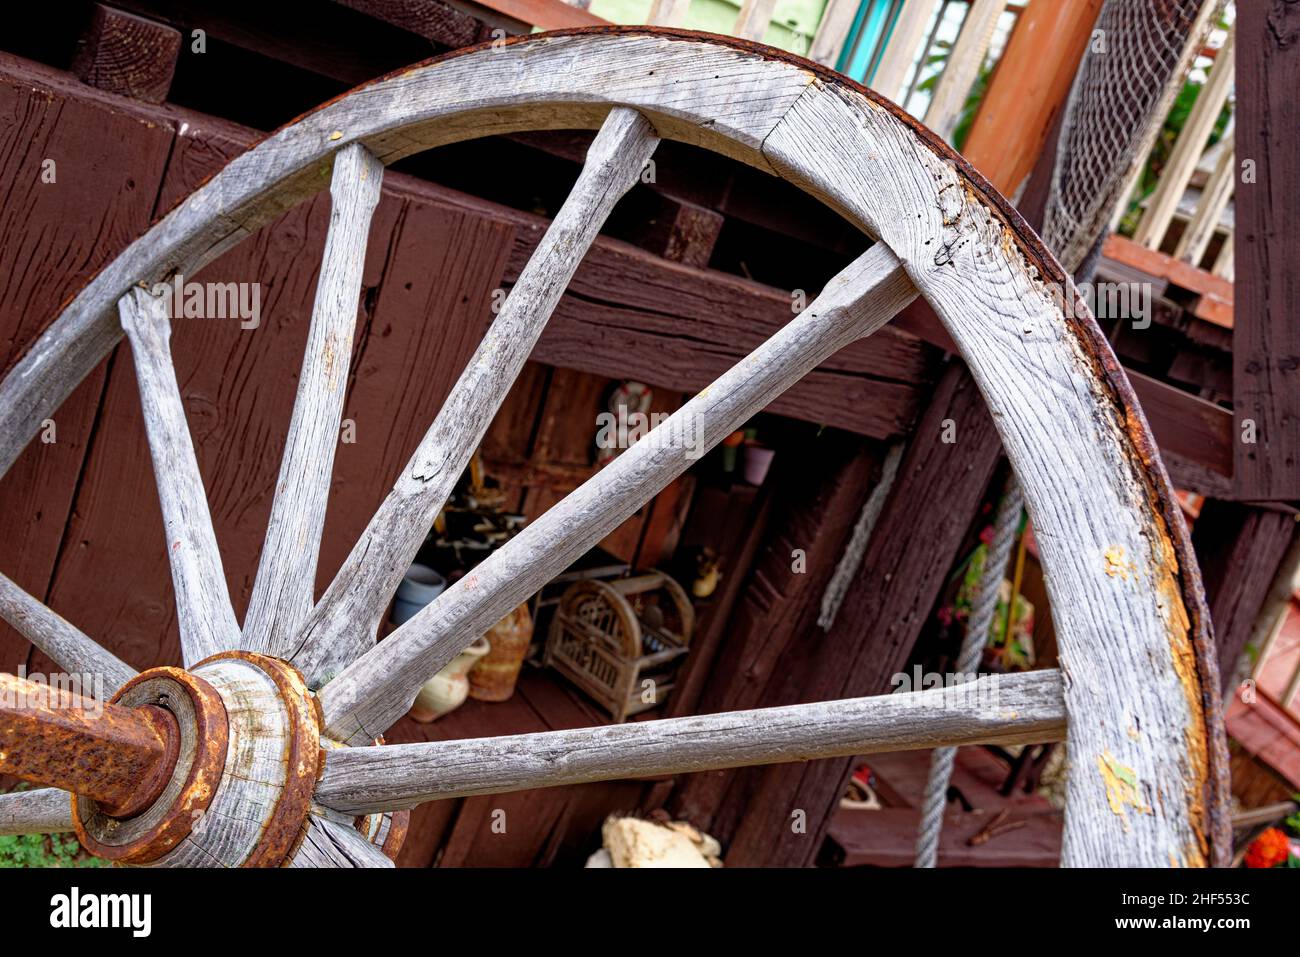 Vintage - Dettagli ruota in legno del carro - Popeye Village in Anchor Bay - Sweethaven Village - Malta. 1st del febbraio 2016 Foto Stock